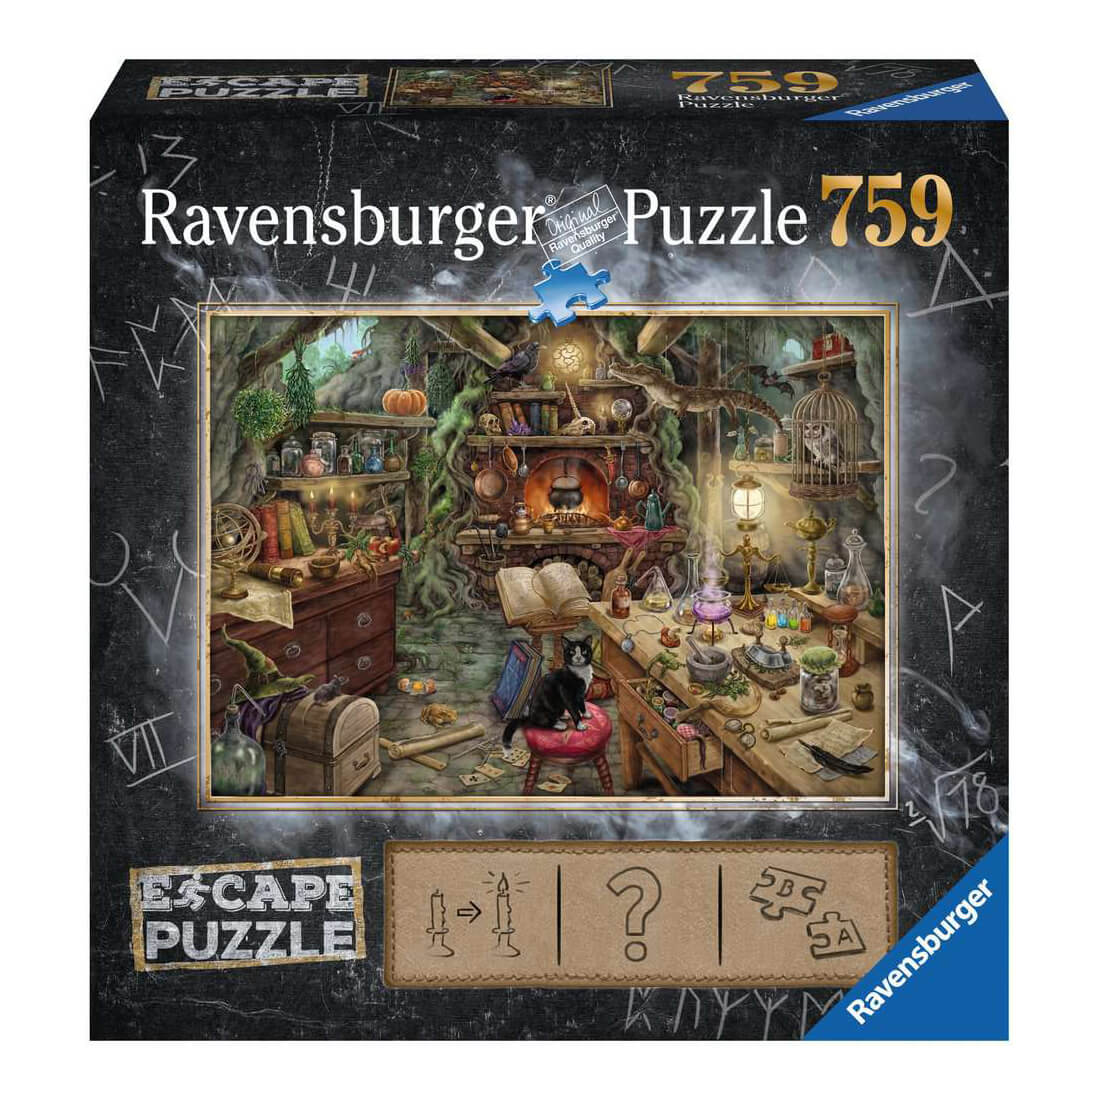 Ravensburger Witch's Kitchen 759 Piece Escape Puzzle